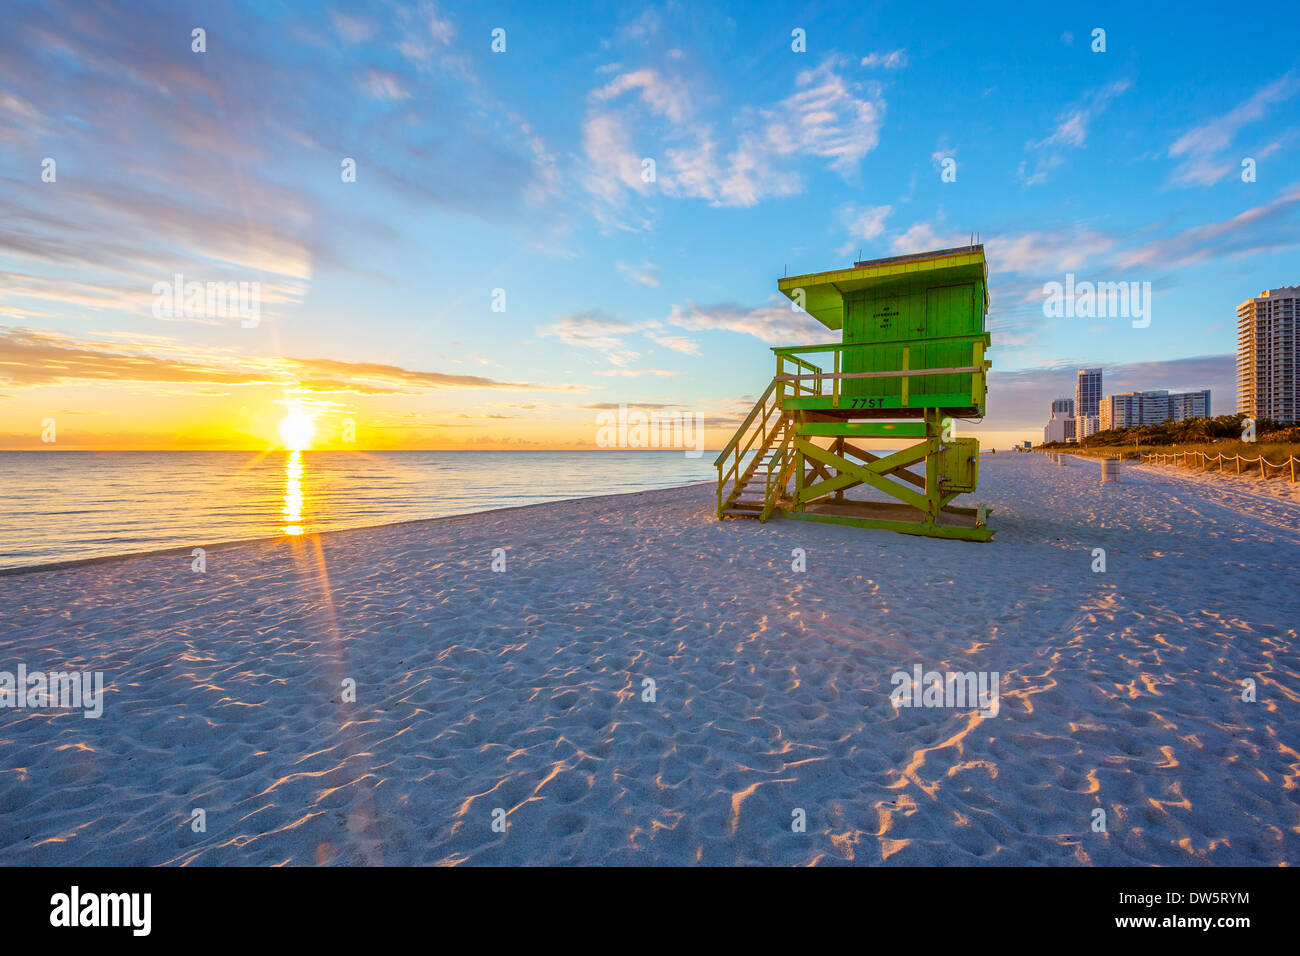 Célèbre South Beach Miami sunrise avec lifeguard tower Banque D'Images